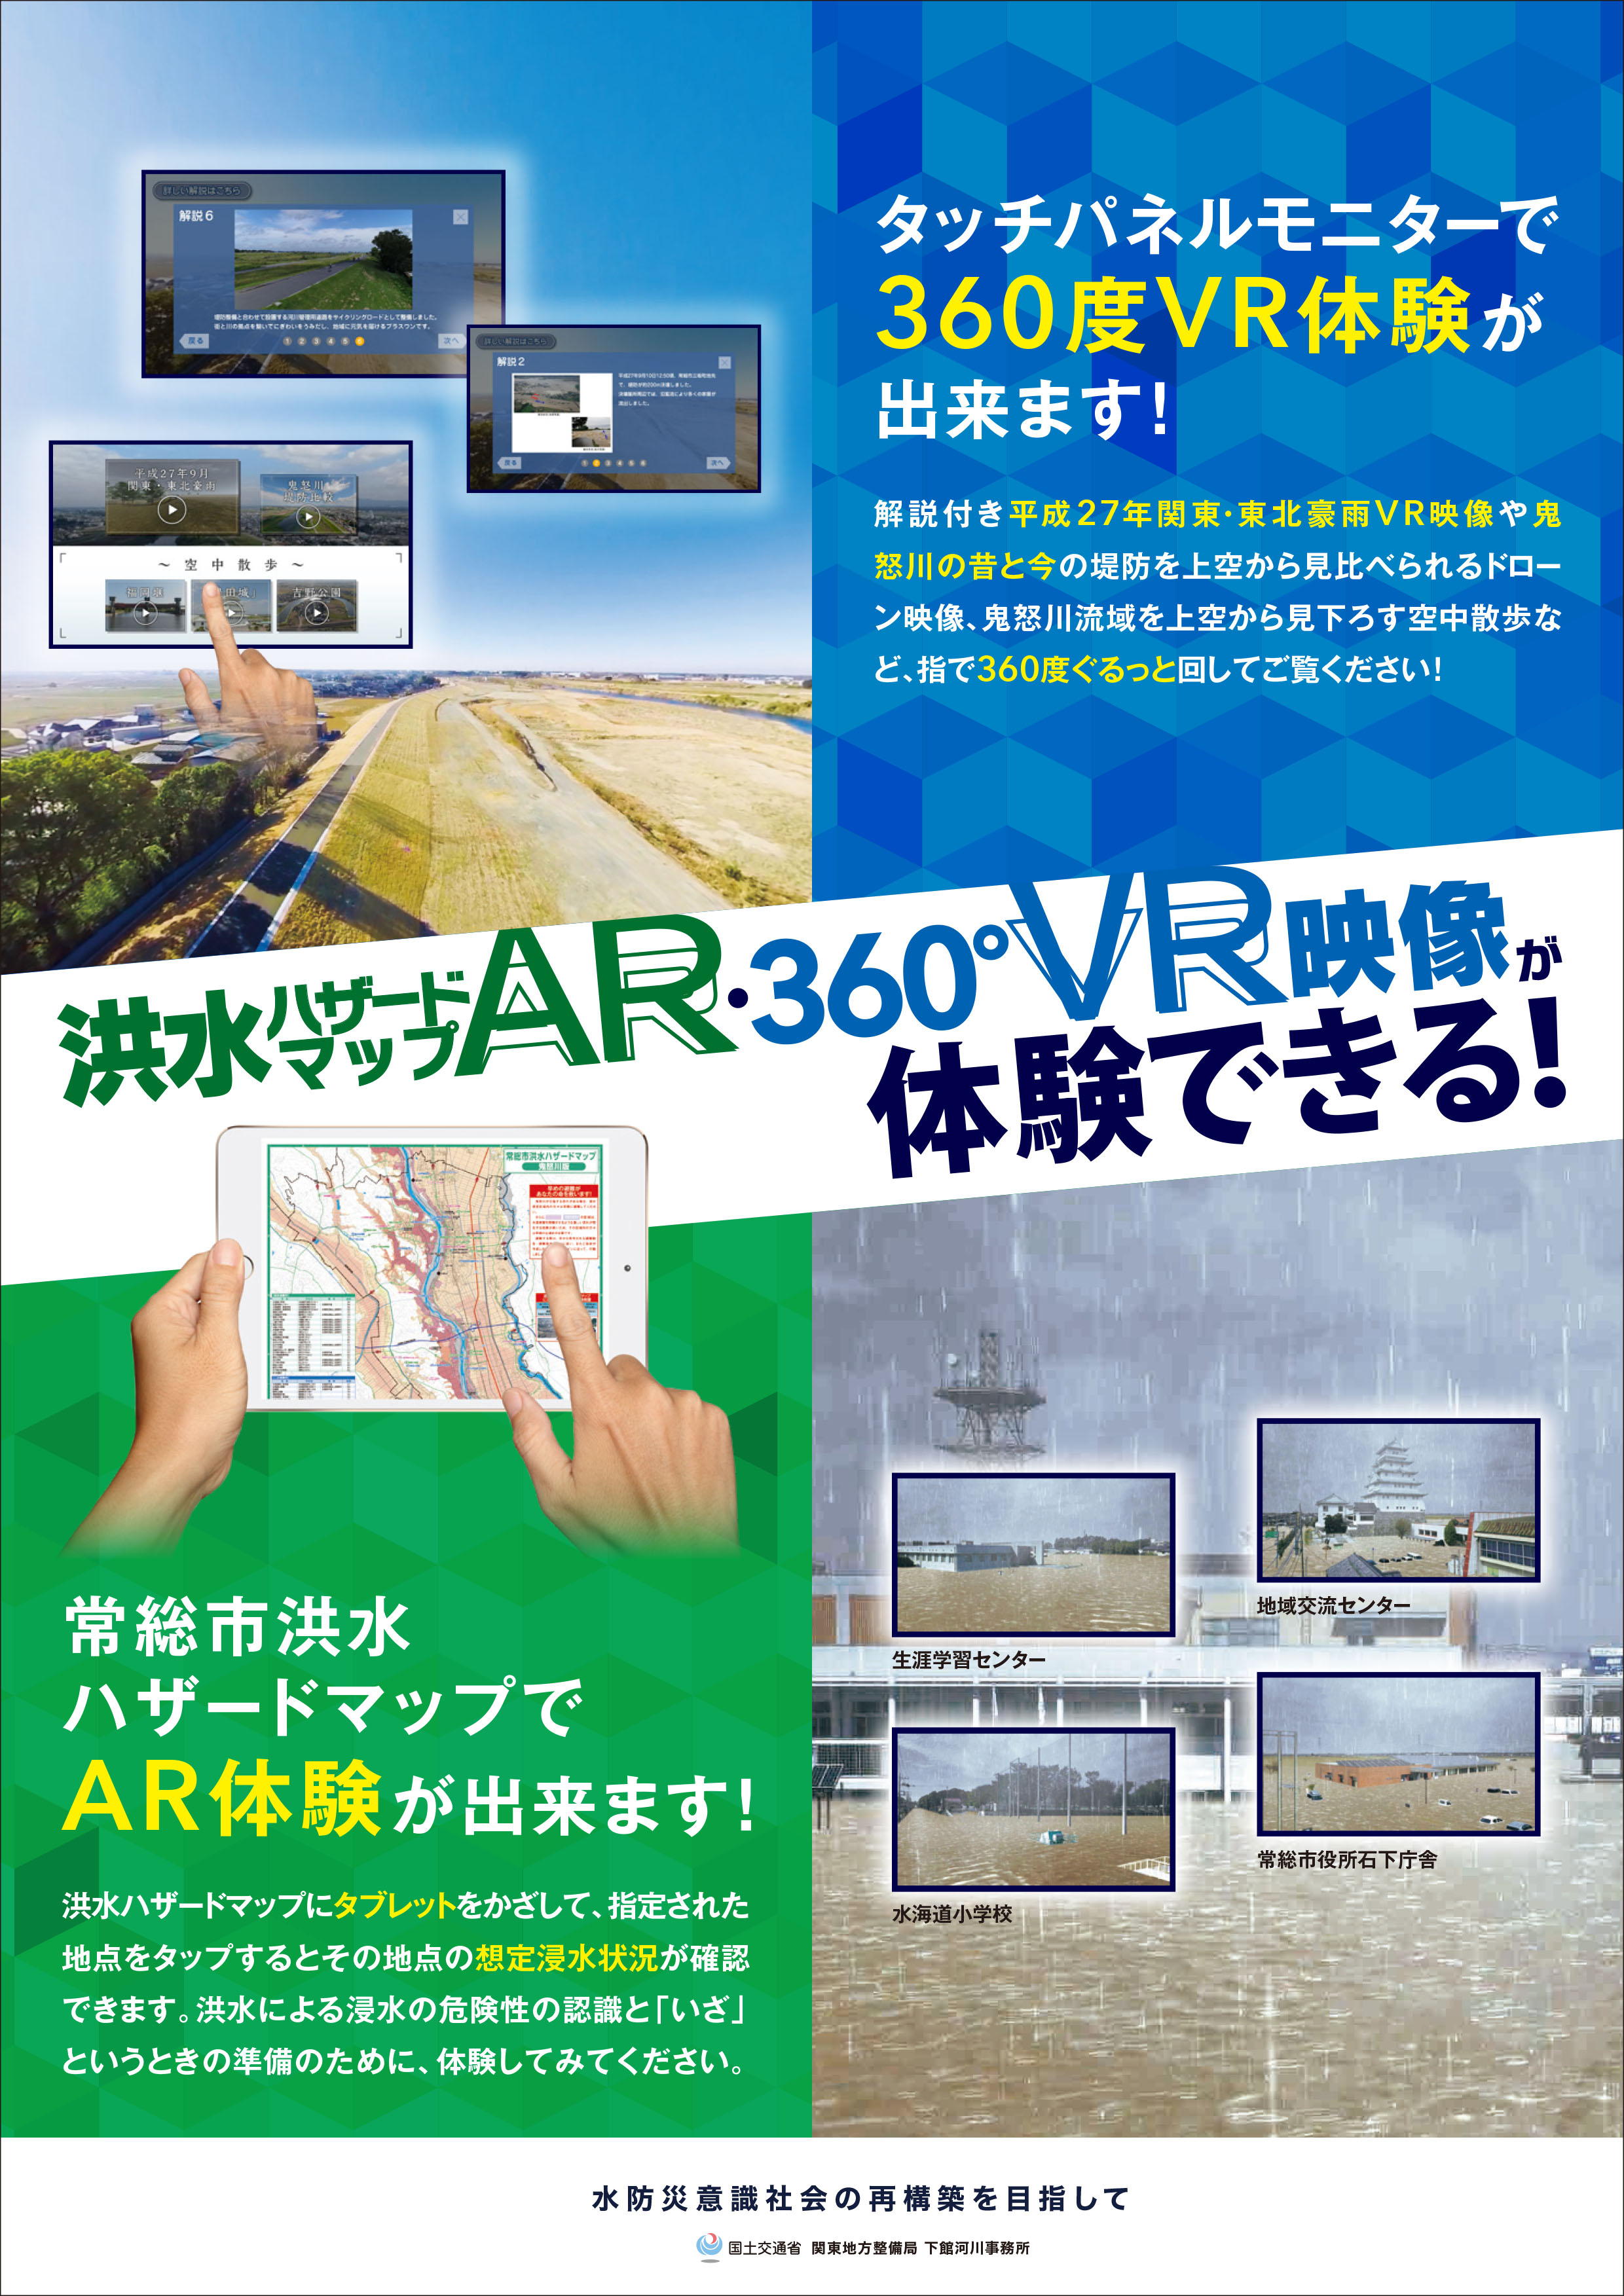 決壊VR映像360 タッチパネル